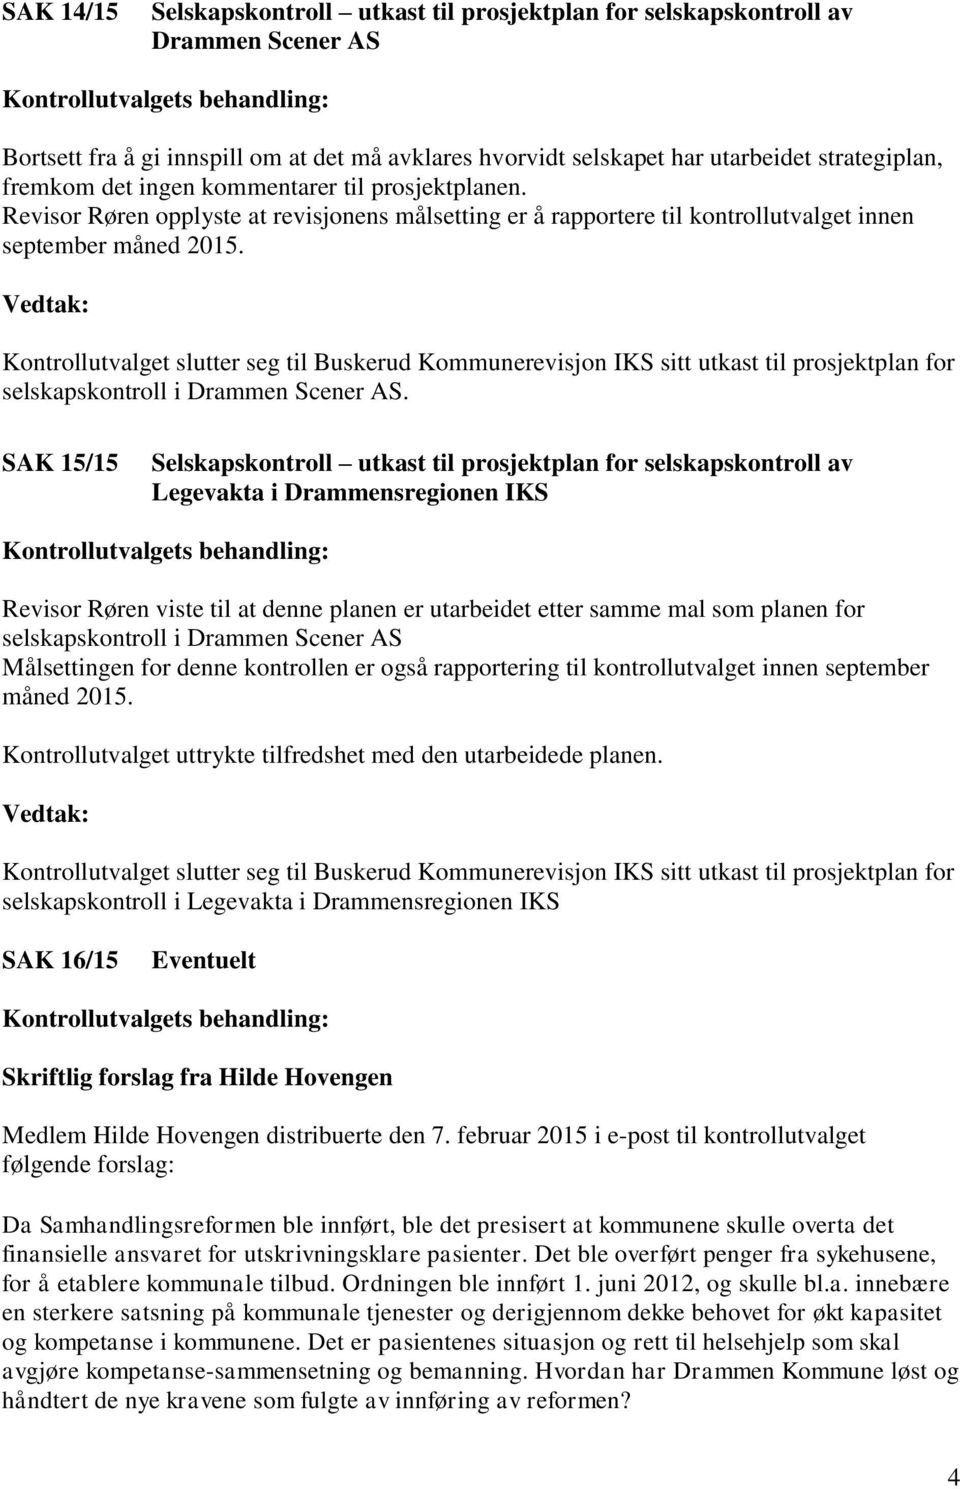 Vedtak: Kontrollutvalget slutter seg til Buskerud Kommunerevisjon IKS sitt utkast til prosjektplan for selskapskontroll i Drammen Scener AS.